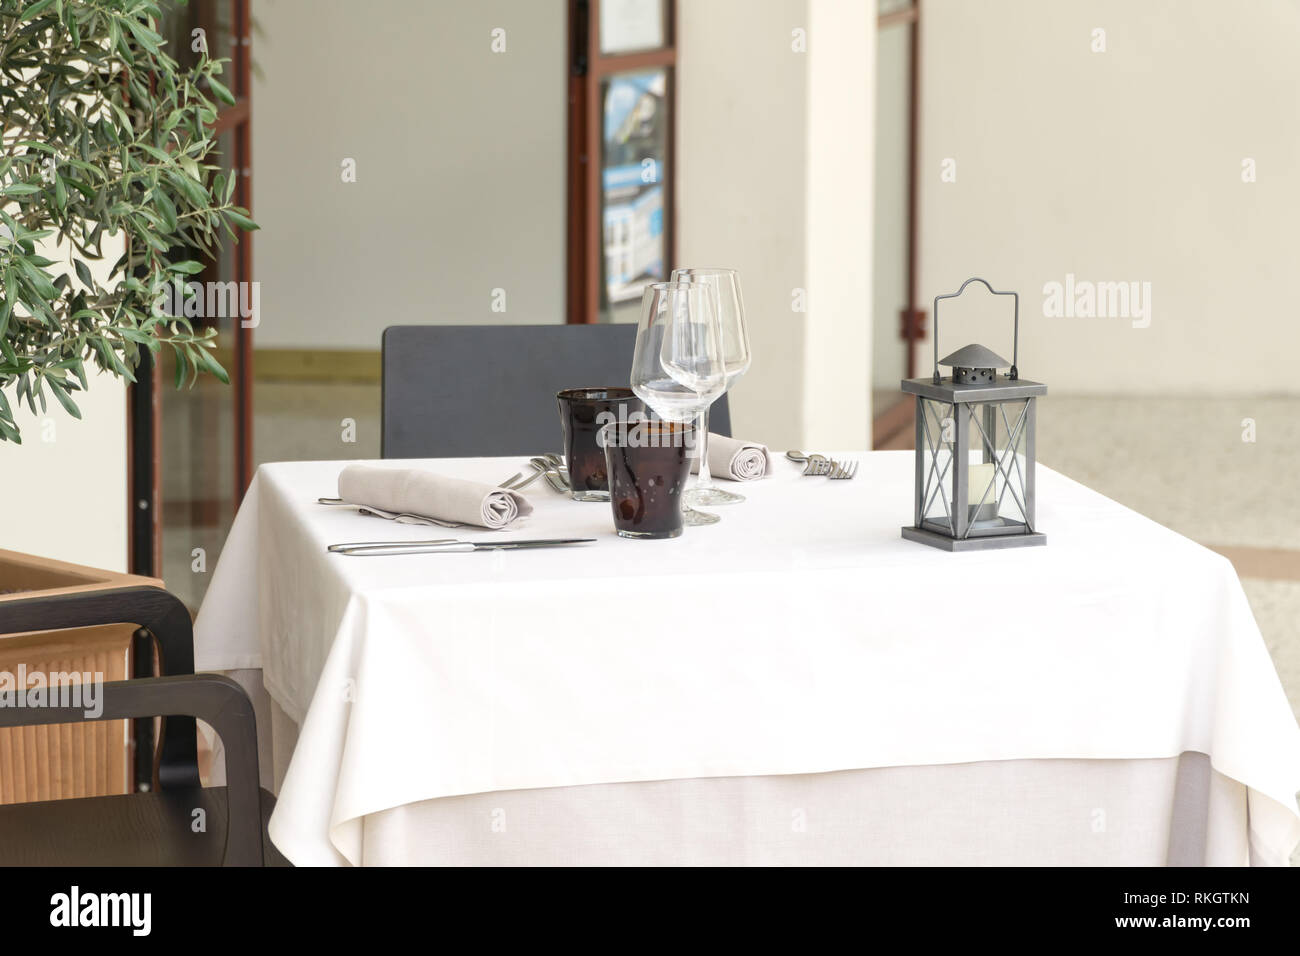 Eine leere Tabelle für Zwei in einem Restaurant, mit einer weißen Tischdecke mit zwei Tisch Sets und eine Laterne bedeckt, in einem Café oder Restaurant außerhalb. Stockfoto